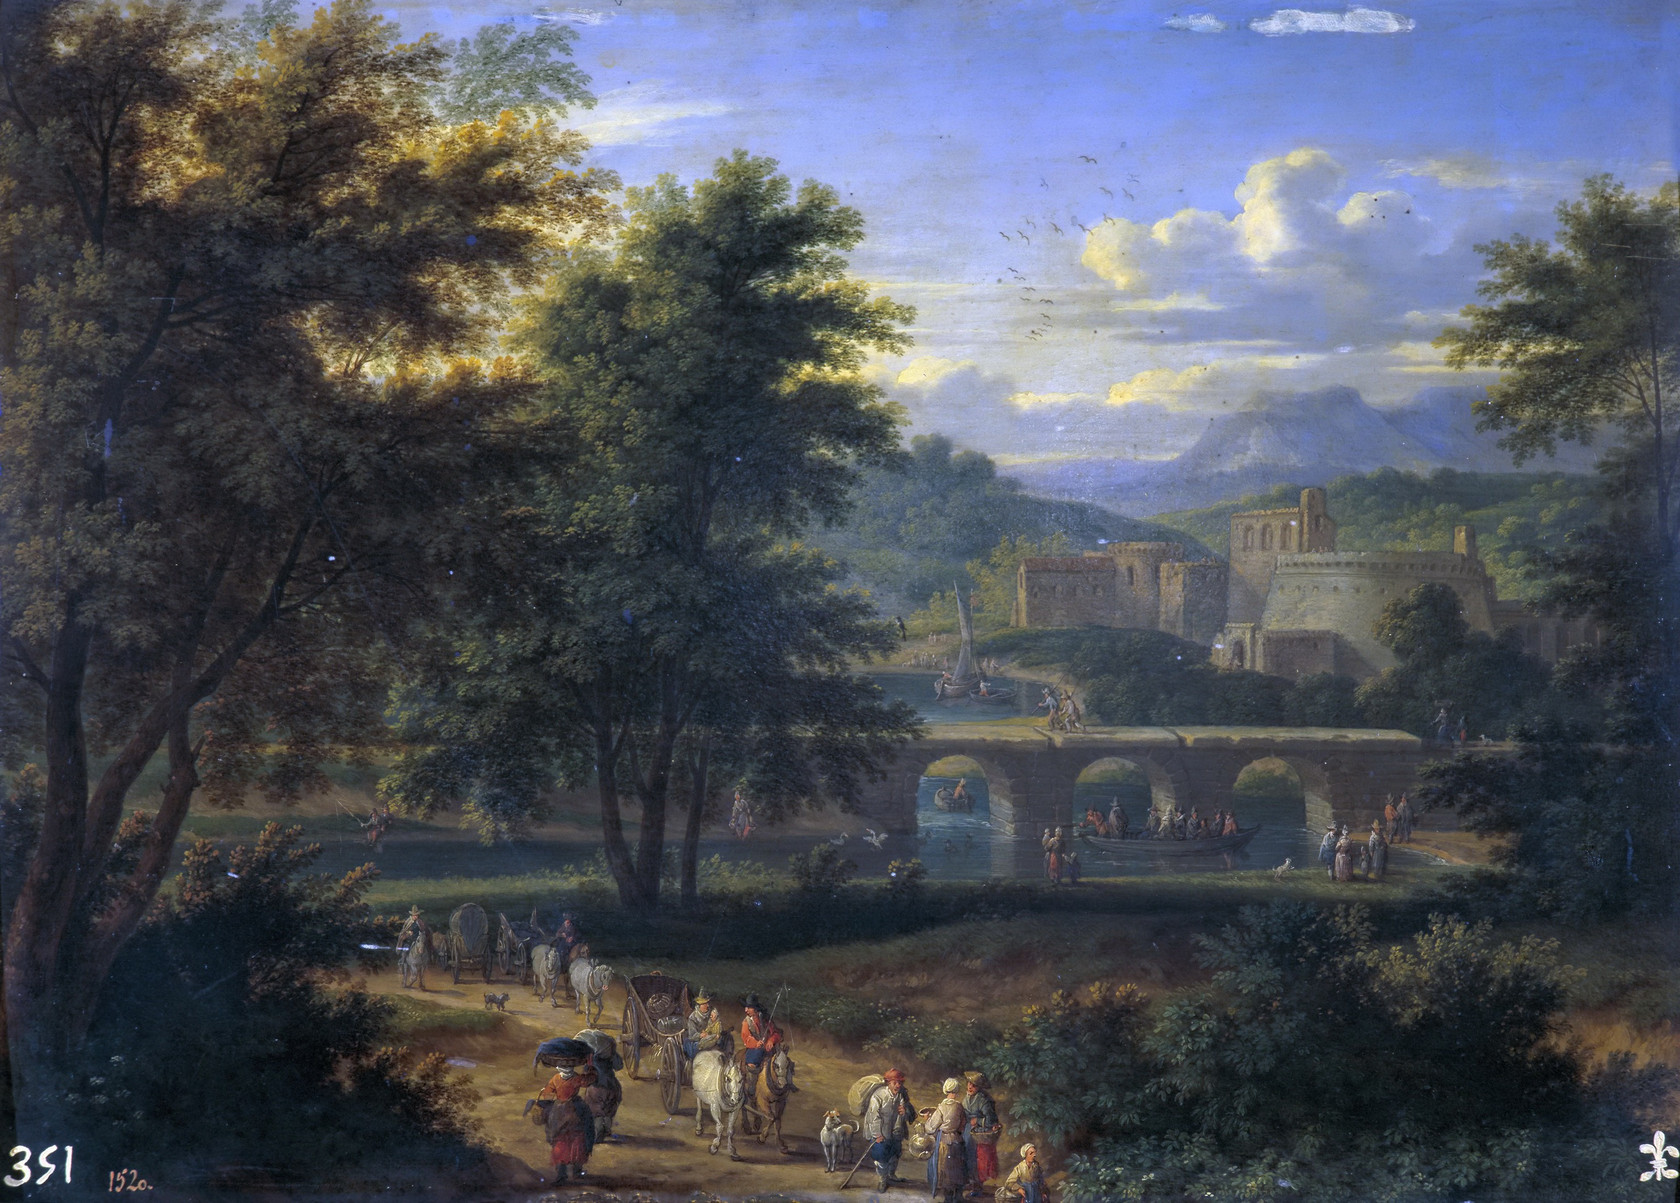 Картина Пейзаж с дорогой к реке - Музей Прадо